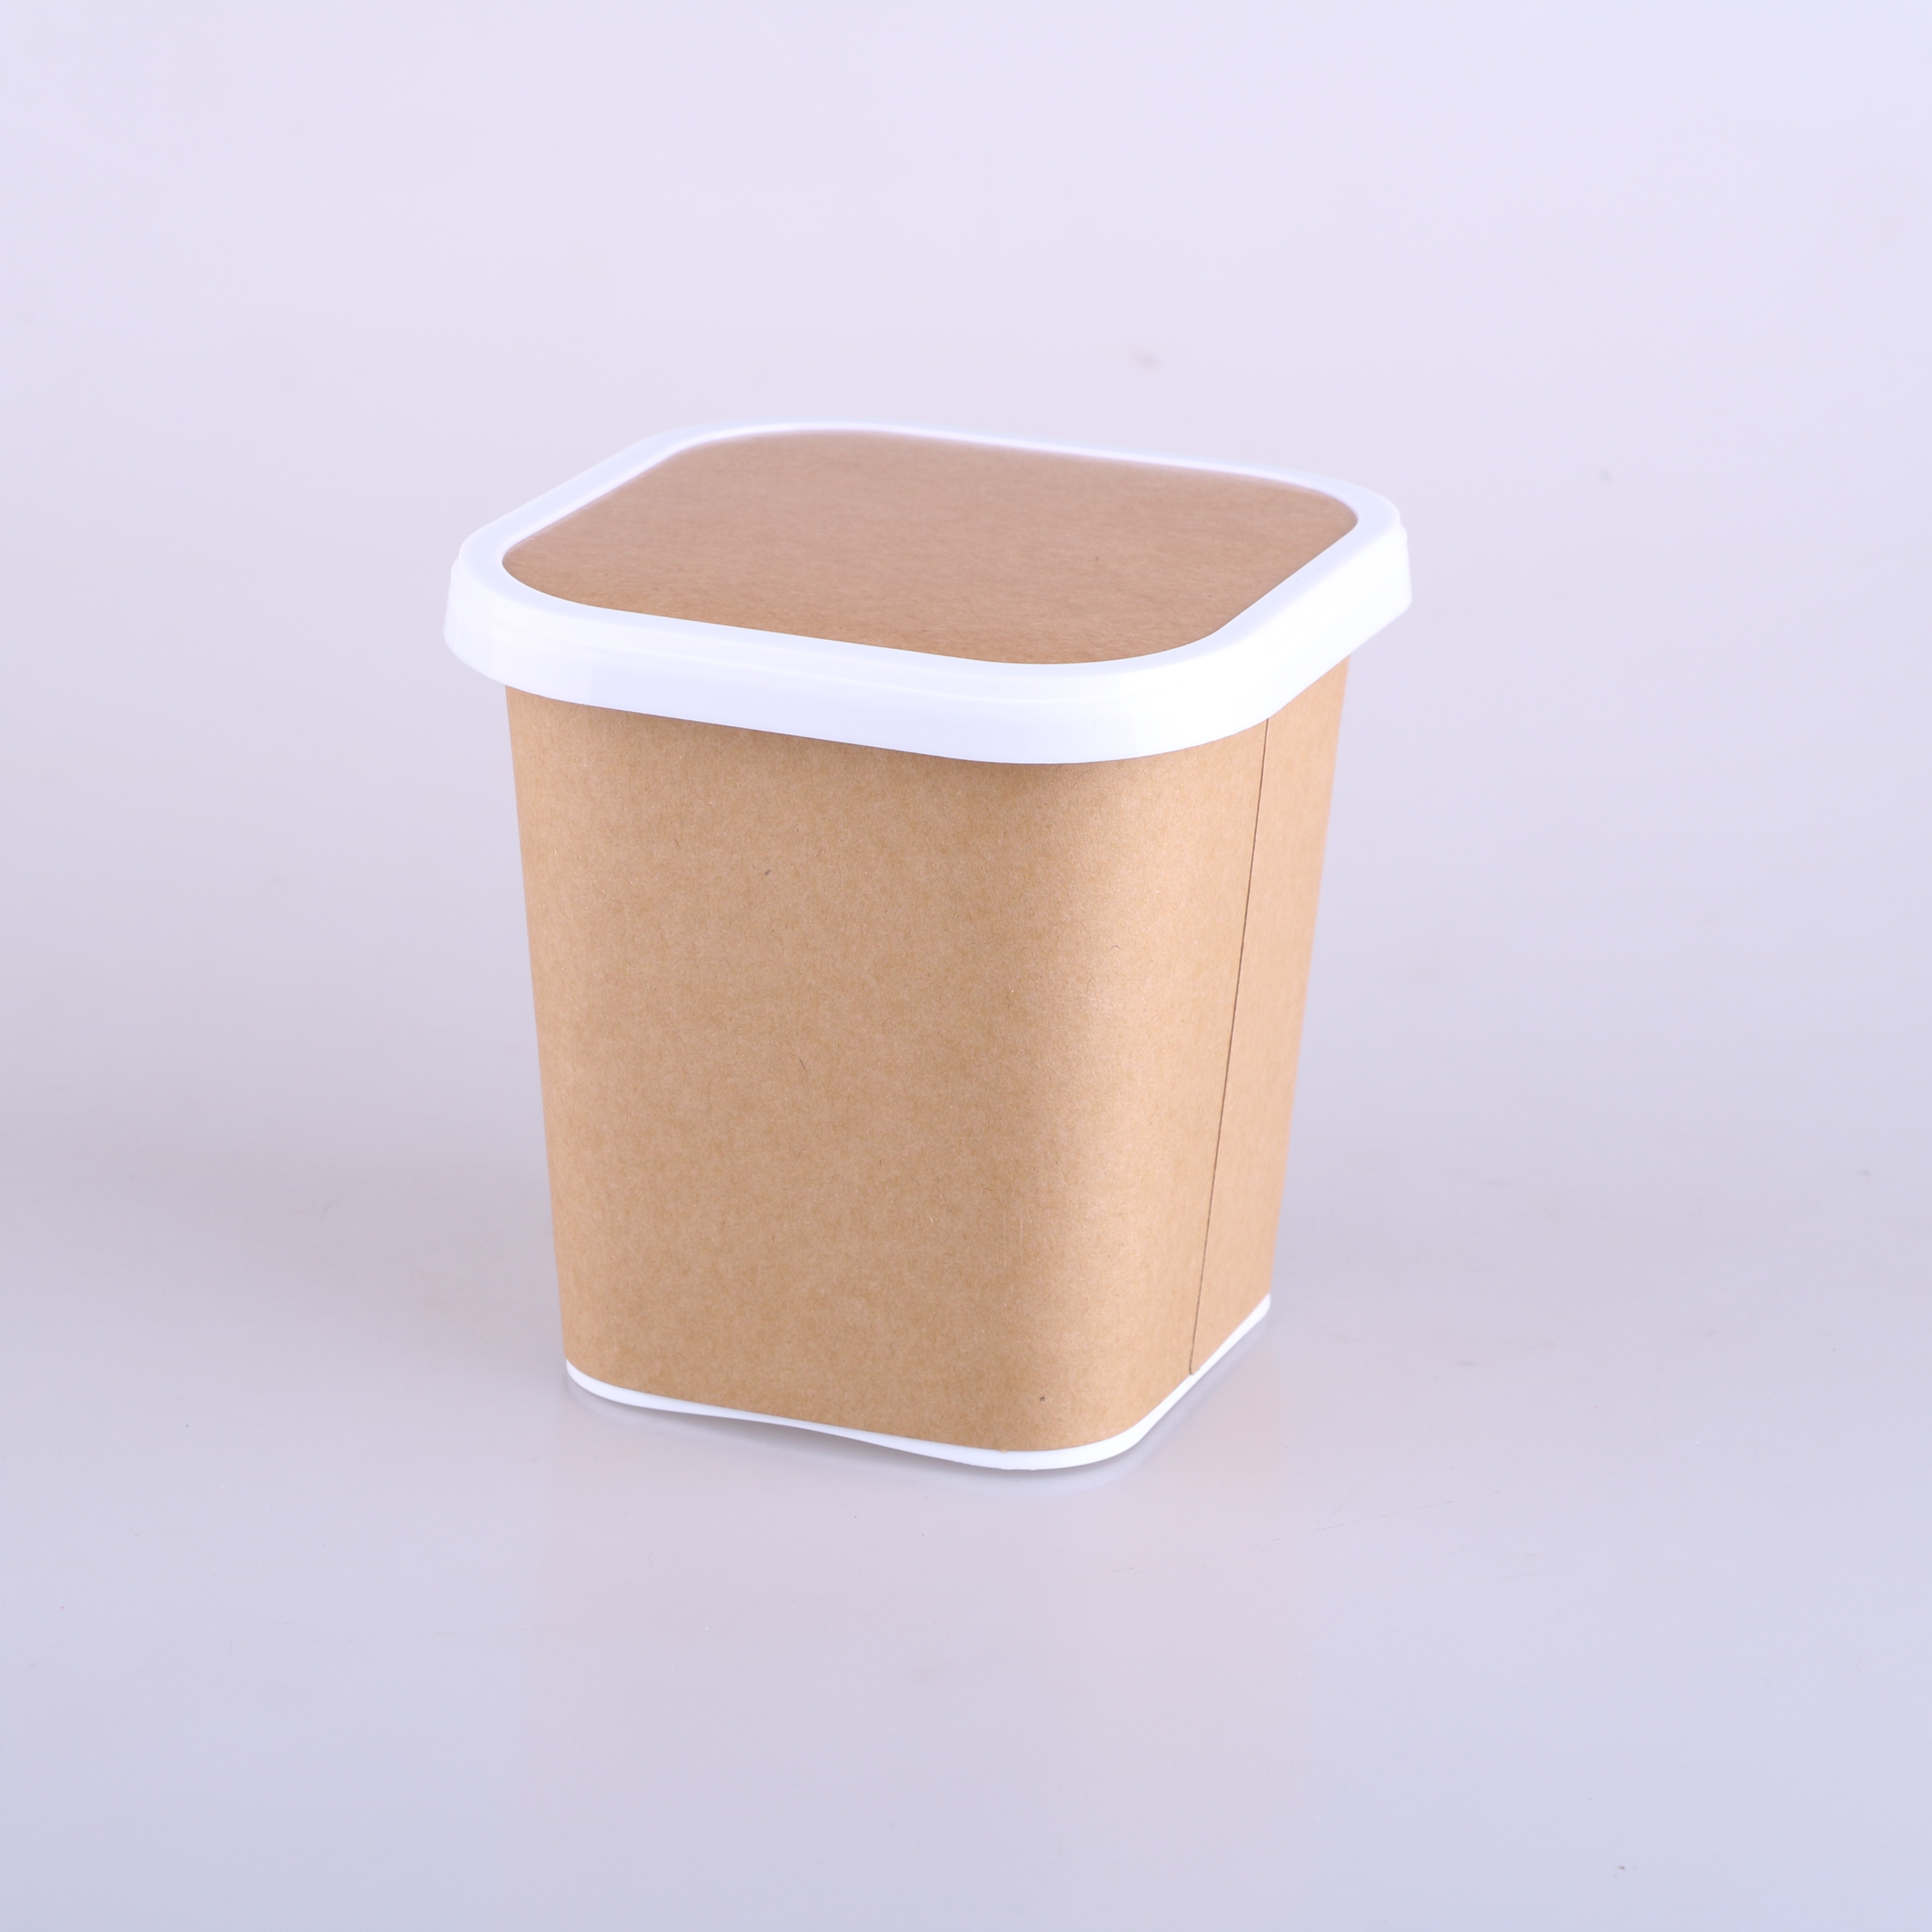 800ml Instant Noodle Bowl Square Paper-Plastic Bowl with Lid